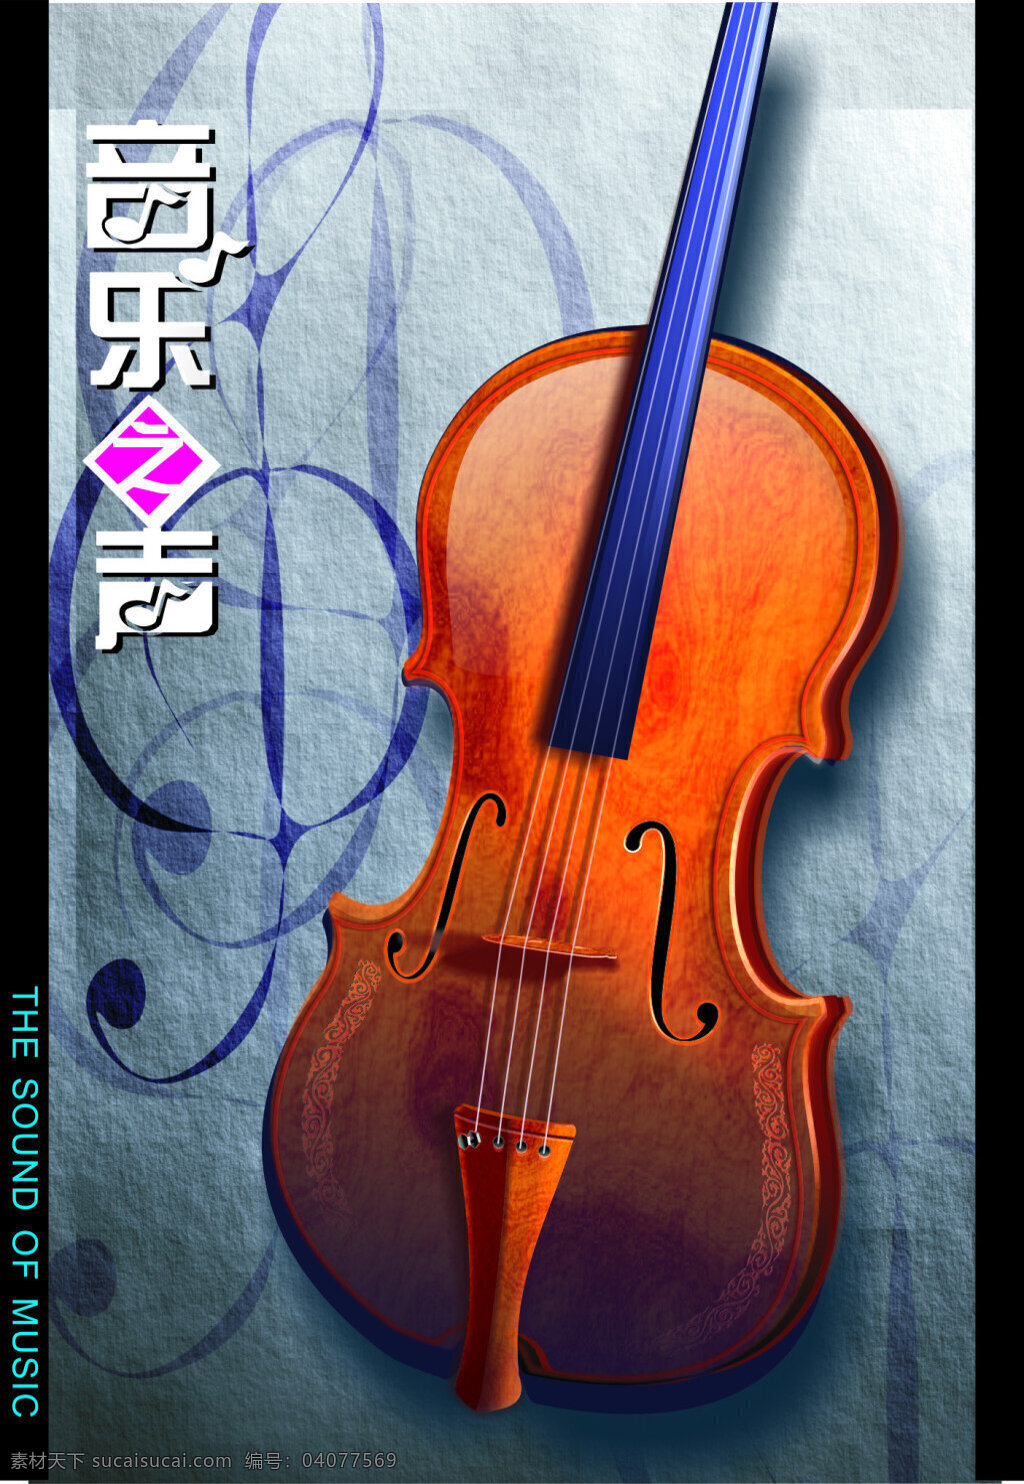 小提琴 高清矢量图 宣传封面 高清 乐器 矢量图